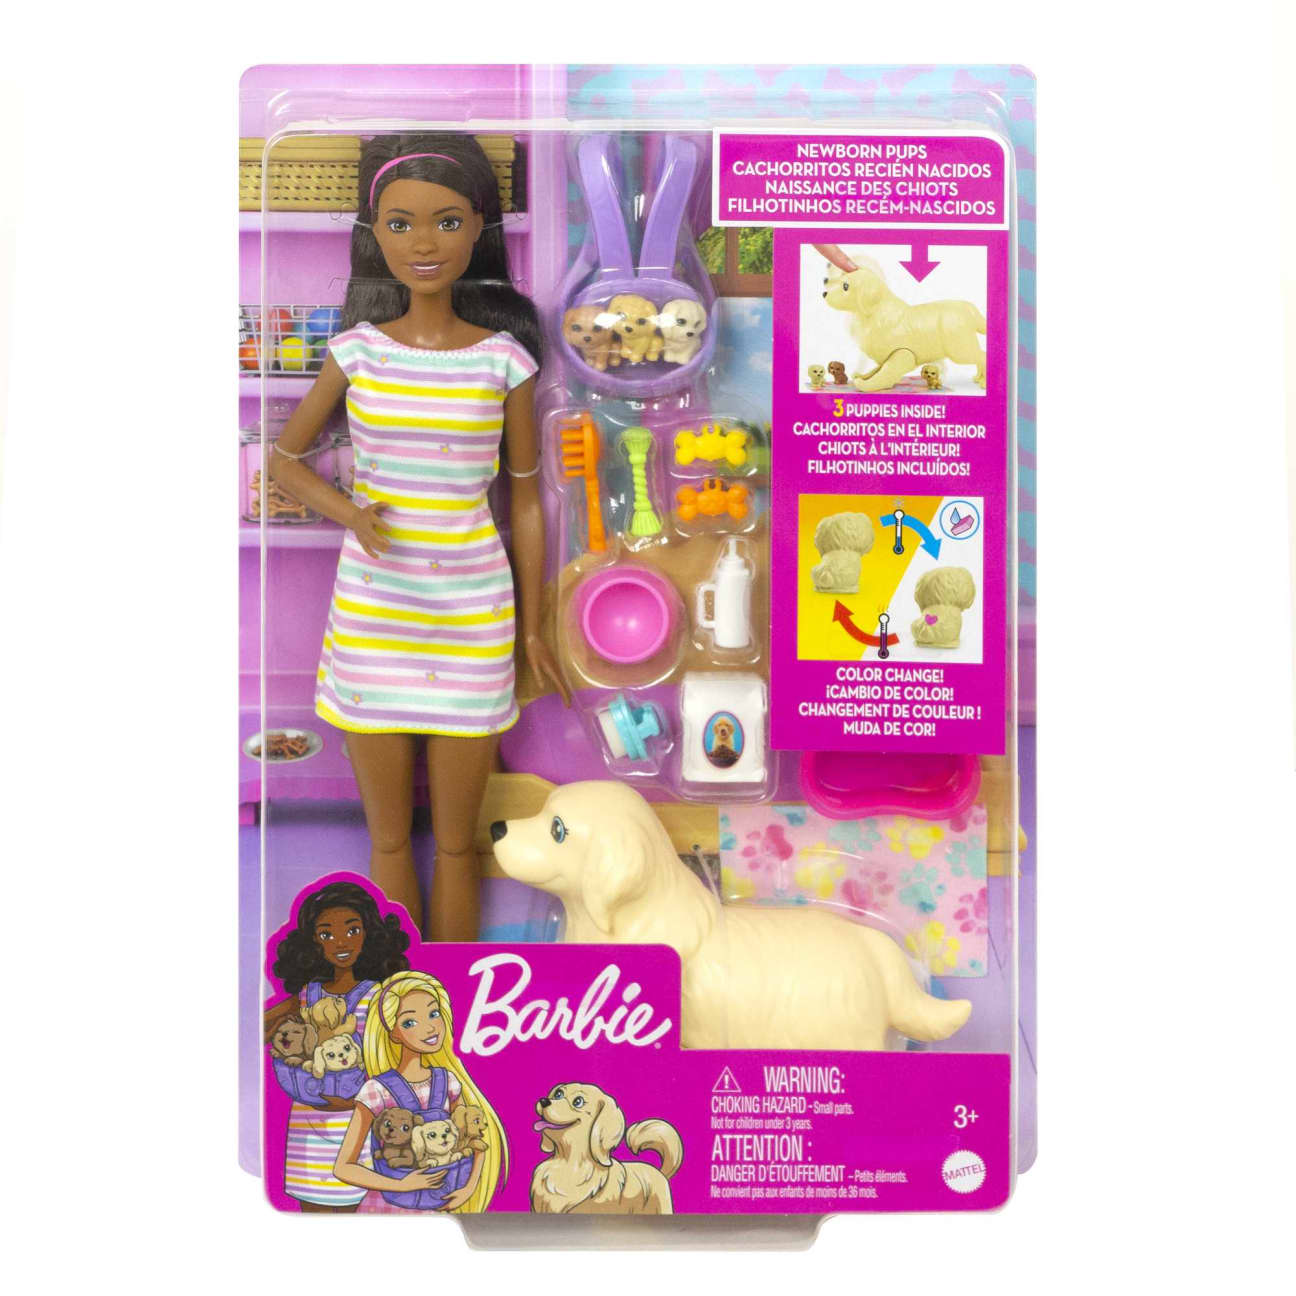 Barbie African American & Pets